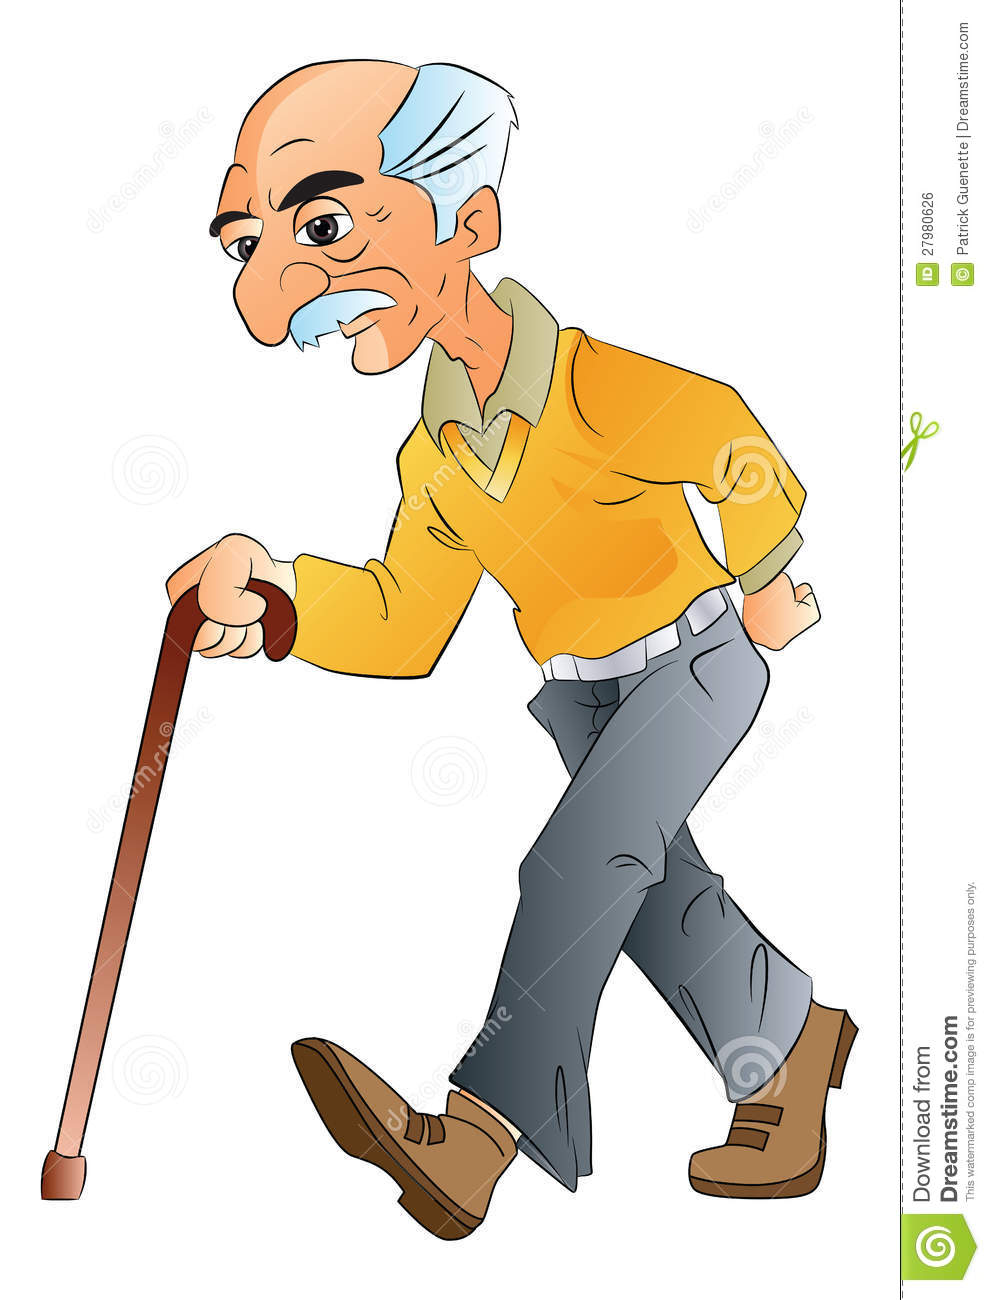 Old Man Walking Illlustration Royalty Free Stock Image   Image